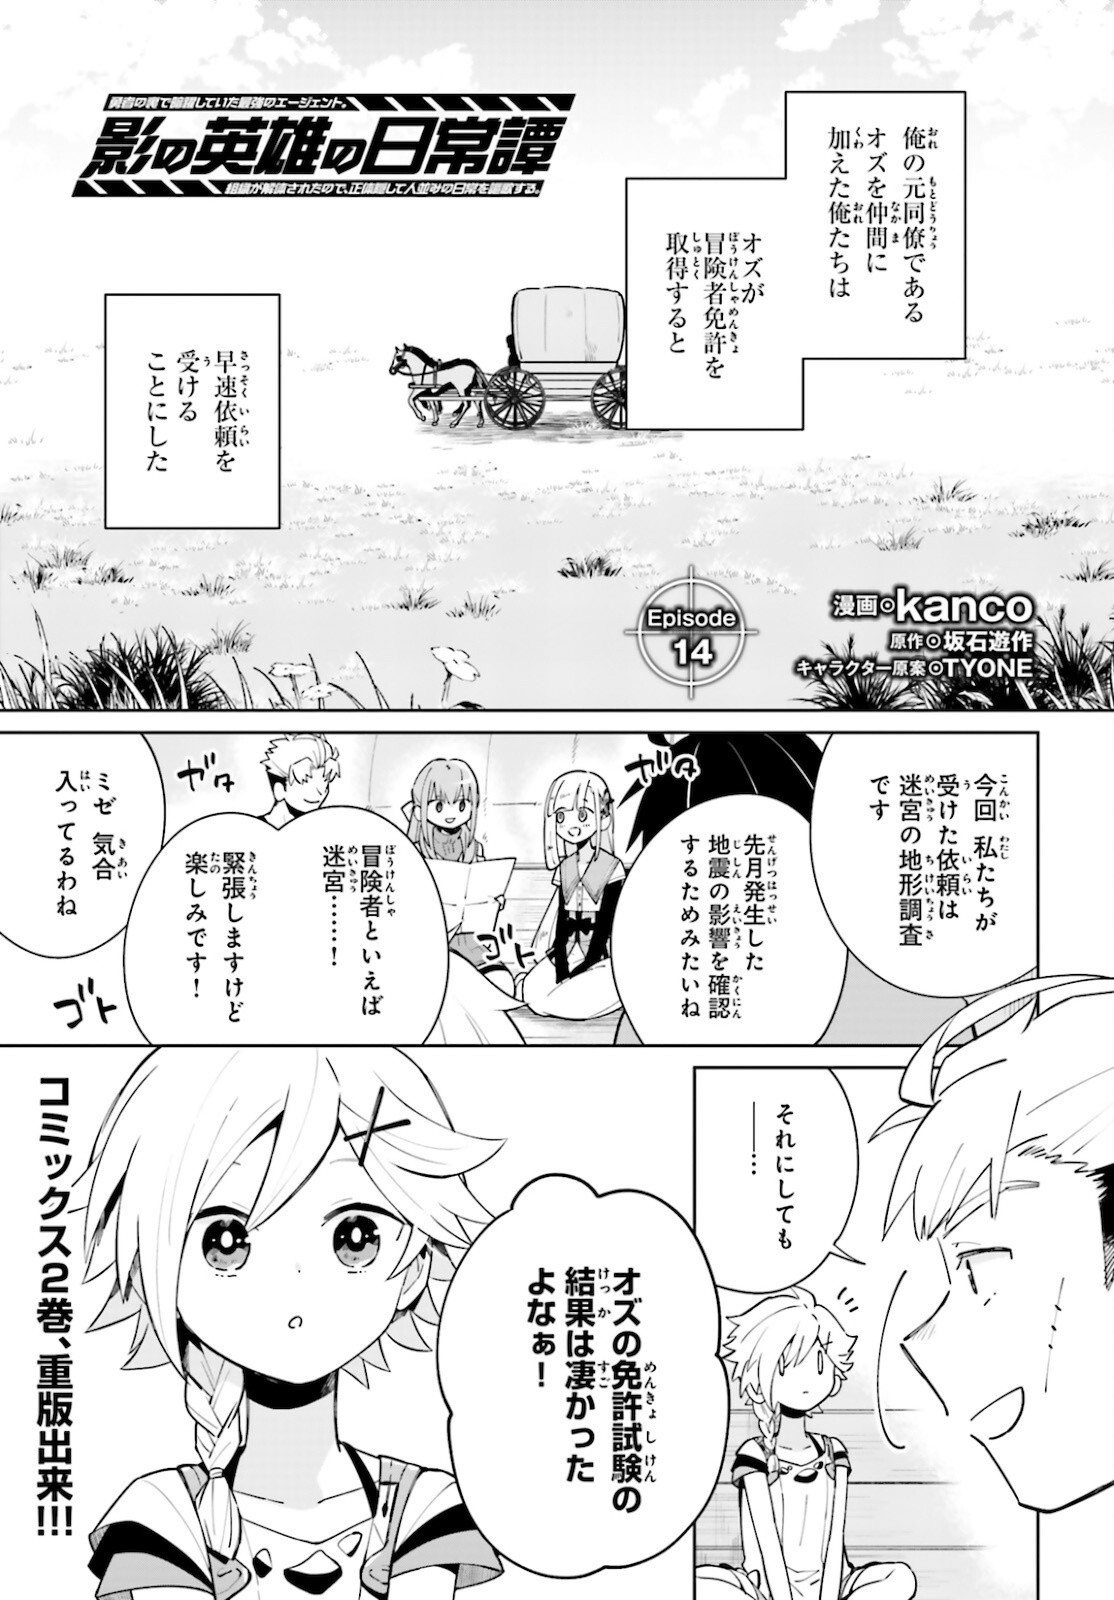 Kage-no-Eiyuu-no-Nichijou-tan-Ichi-no-Yuusha-no-Ura-de-An'yaku-Shite-ita-Saikyou-no-Eijento-Soshiki-ga-Kaitai-sareta-no-de-Shoutai-Kakushite-Hito-nami-no-Nichijou-o-Ouka-suru - Chapter 14 - Page 1